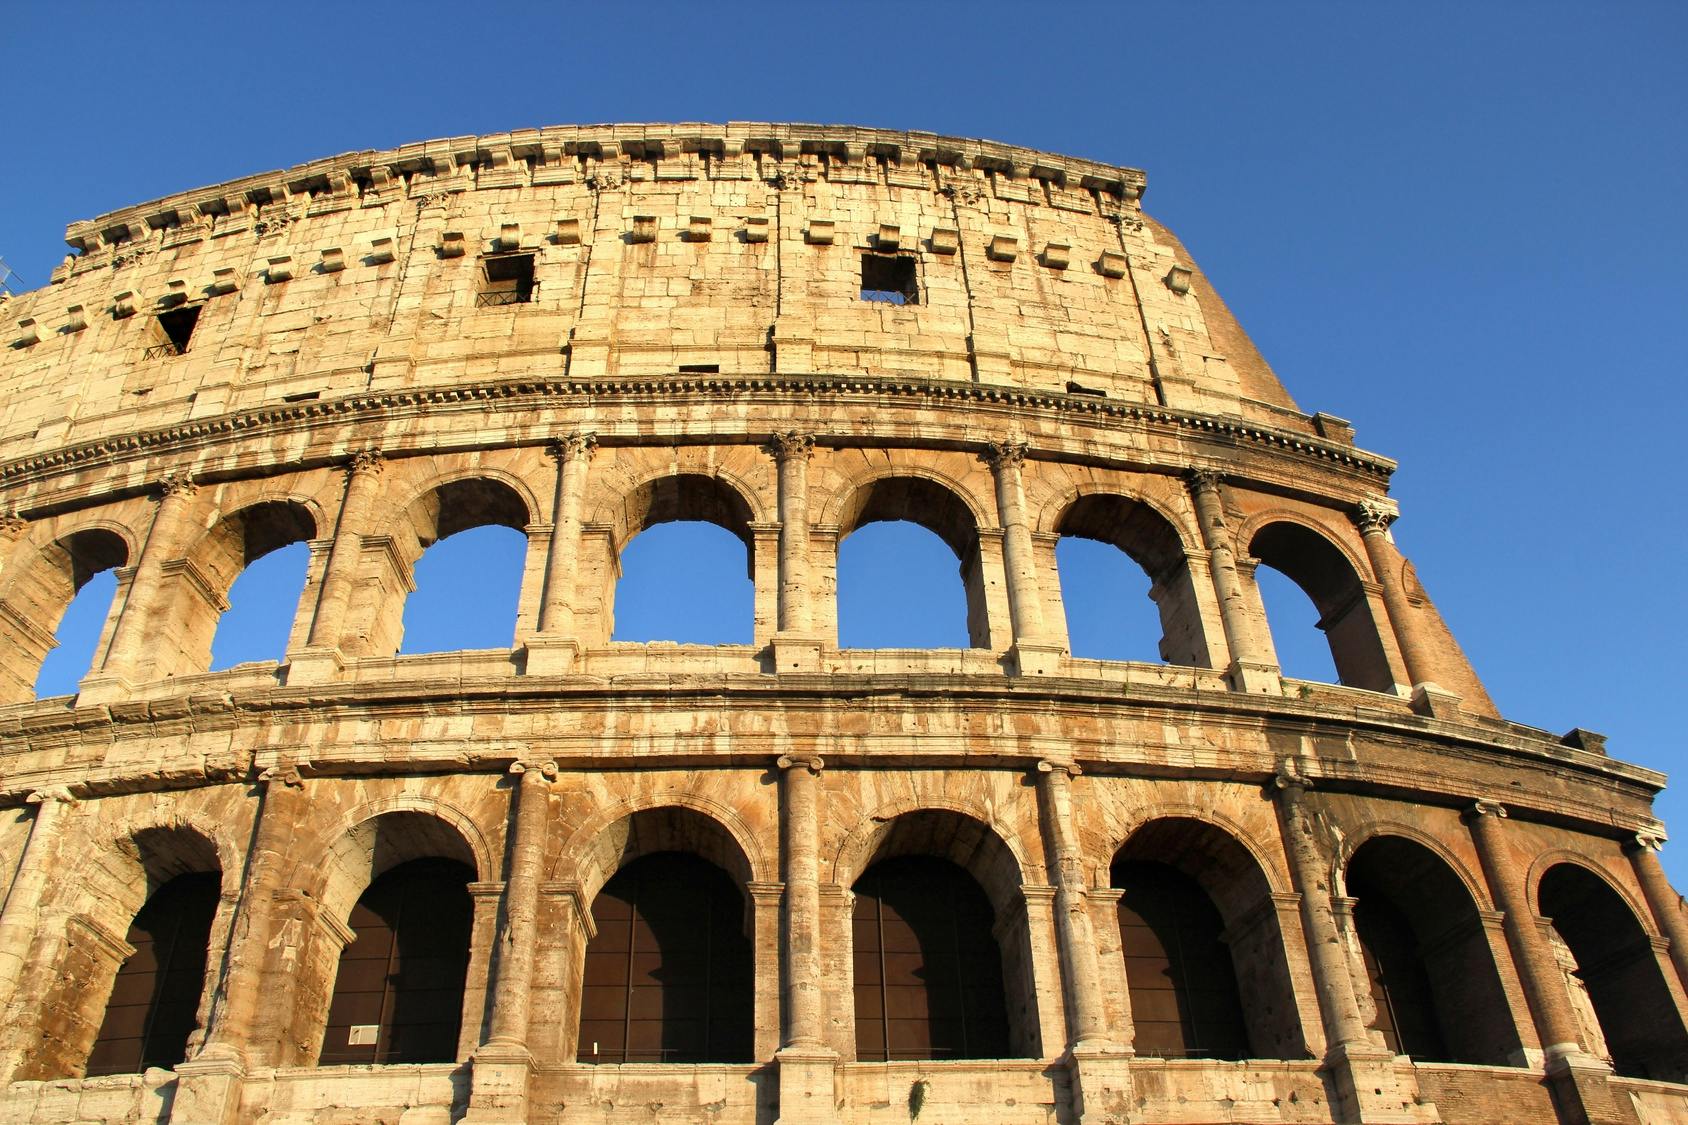 Colosseum met rondleiding door de Arena, het Forum Romanum en de Palatijn